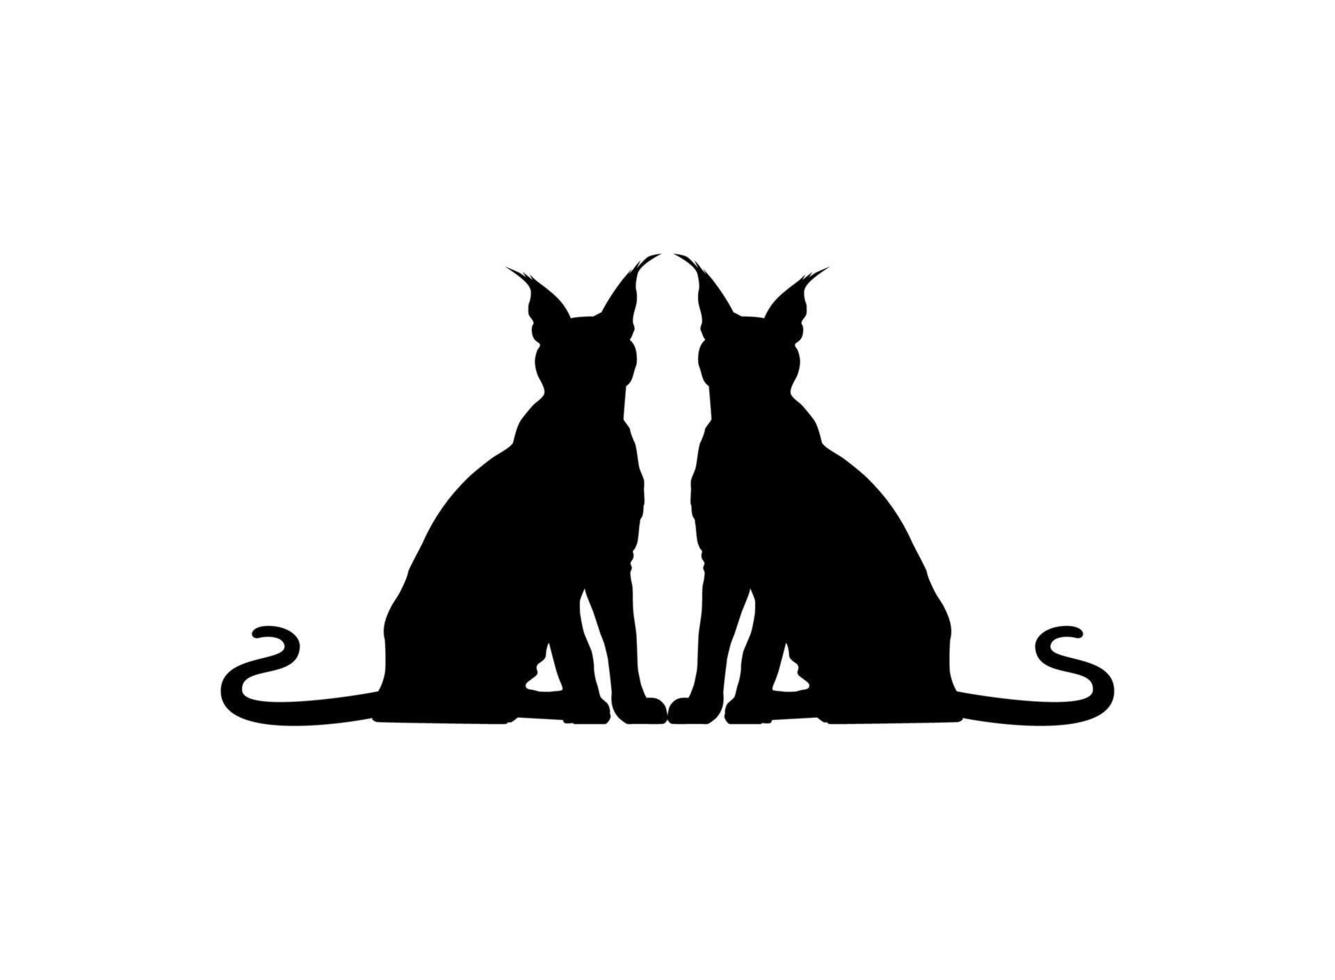 paio di il Caracal gatto silhouette per arte illustrazione, logo, pittogramma, sito web o grafico design elemento. vettore illustrazione